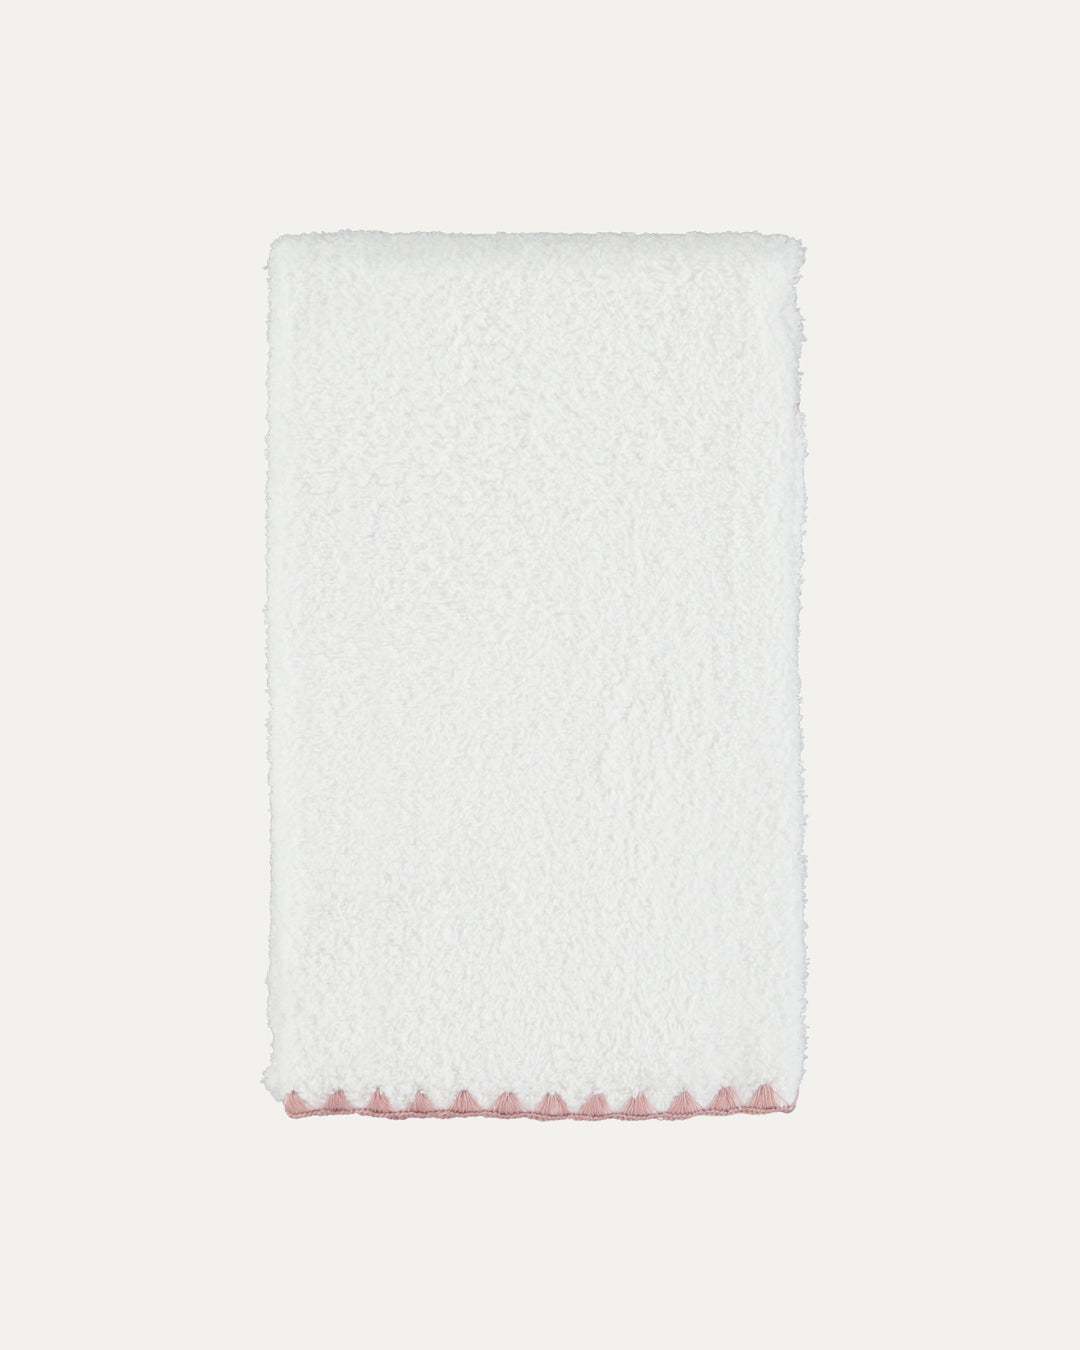 Toalha de Banho Concha Branco com Rosa